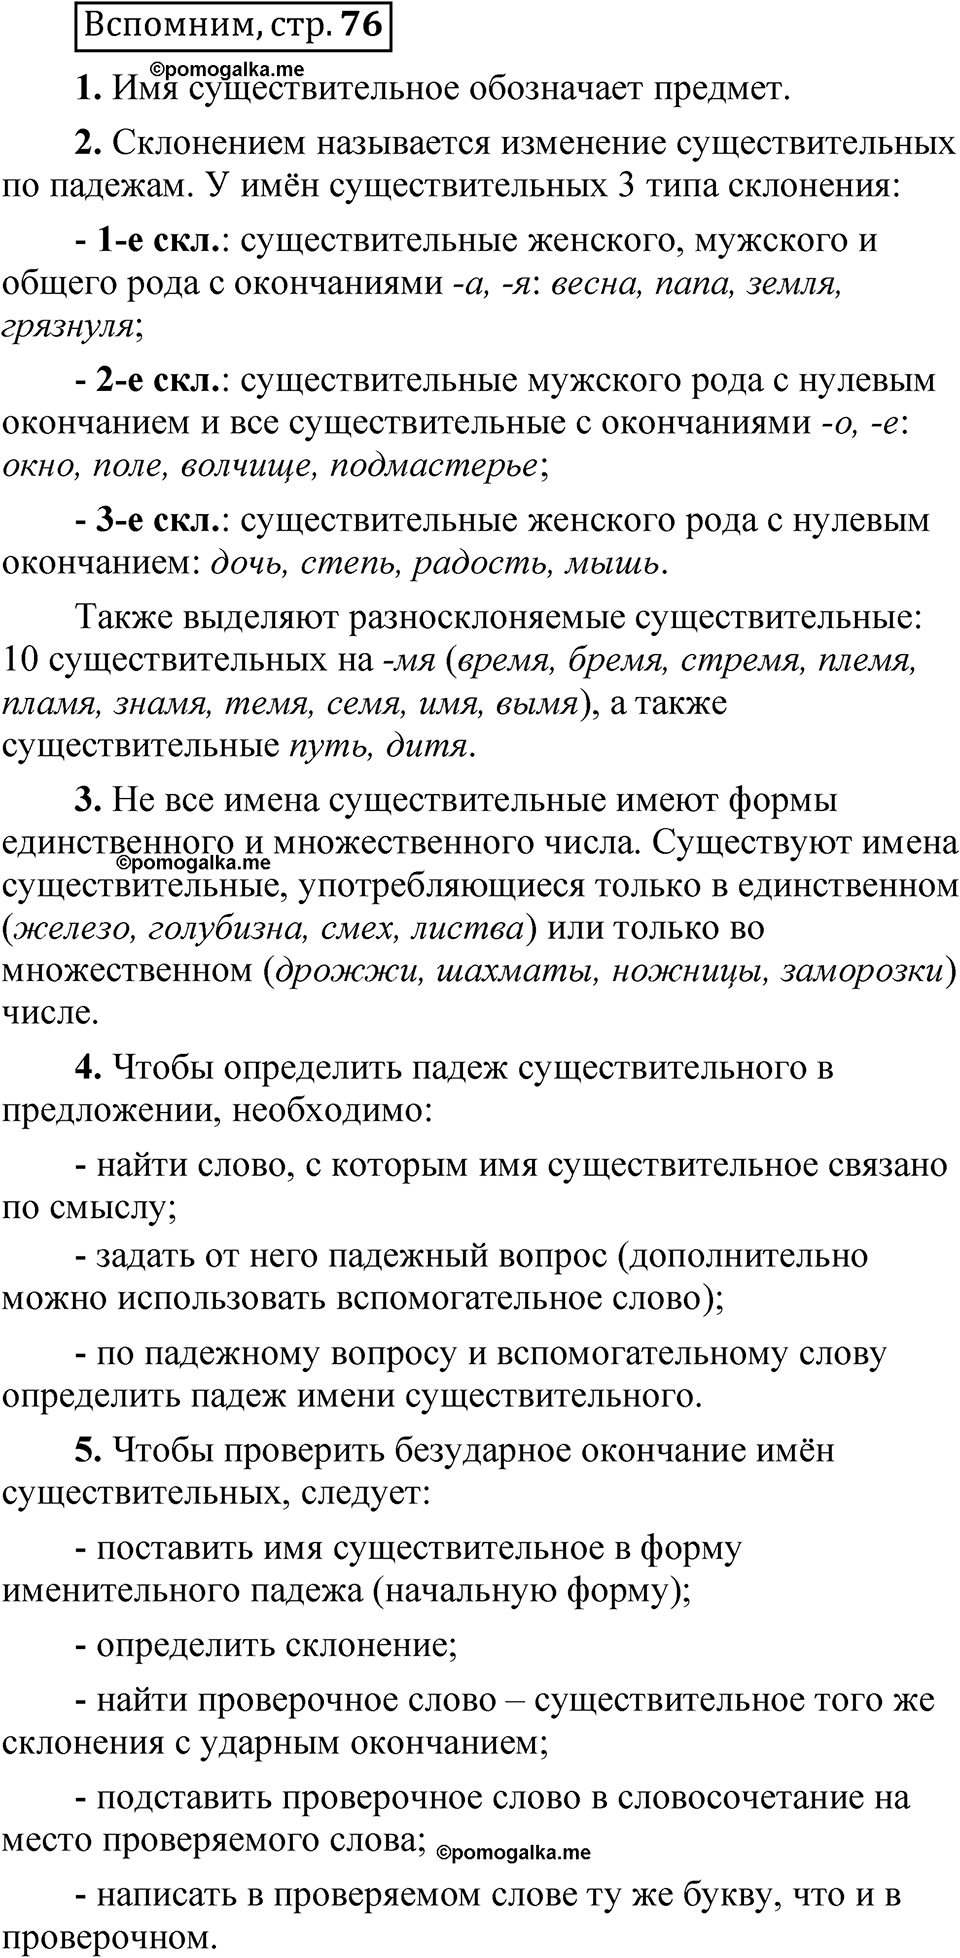 страница 76 Вспомним русский язык 5 класс Быстрова, Кибирева 2 часть 2021 год